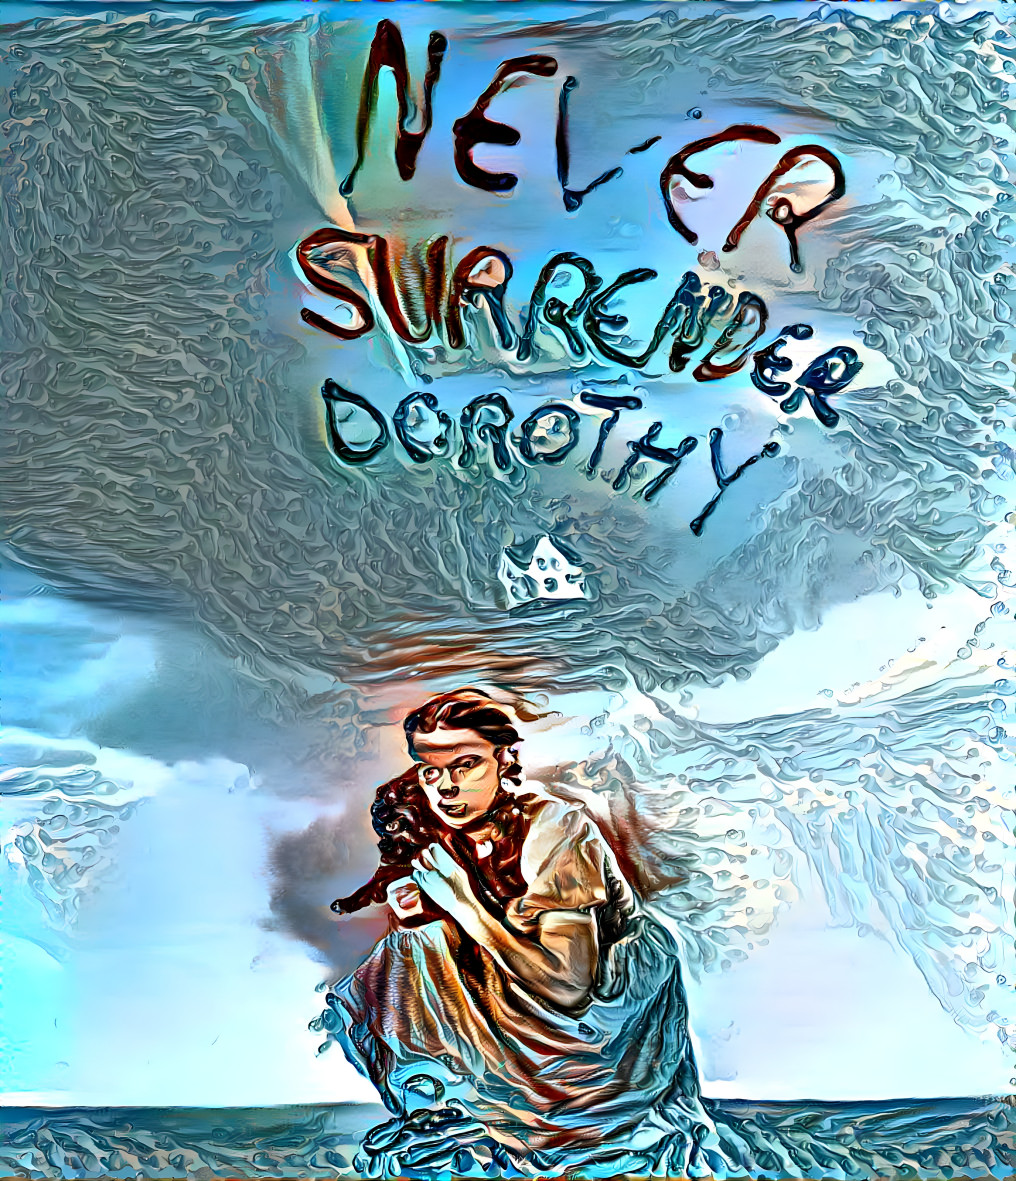 Never Surrender Dorothy